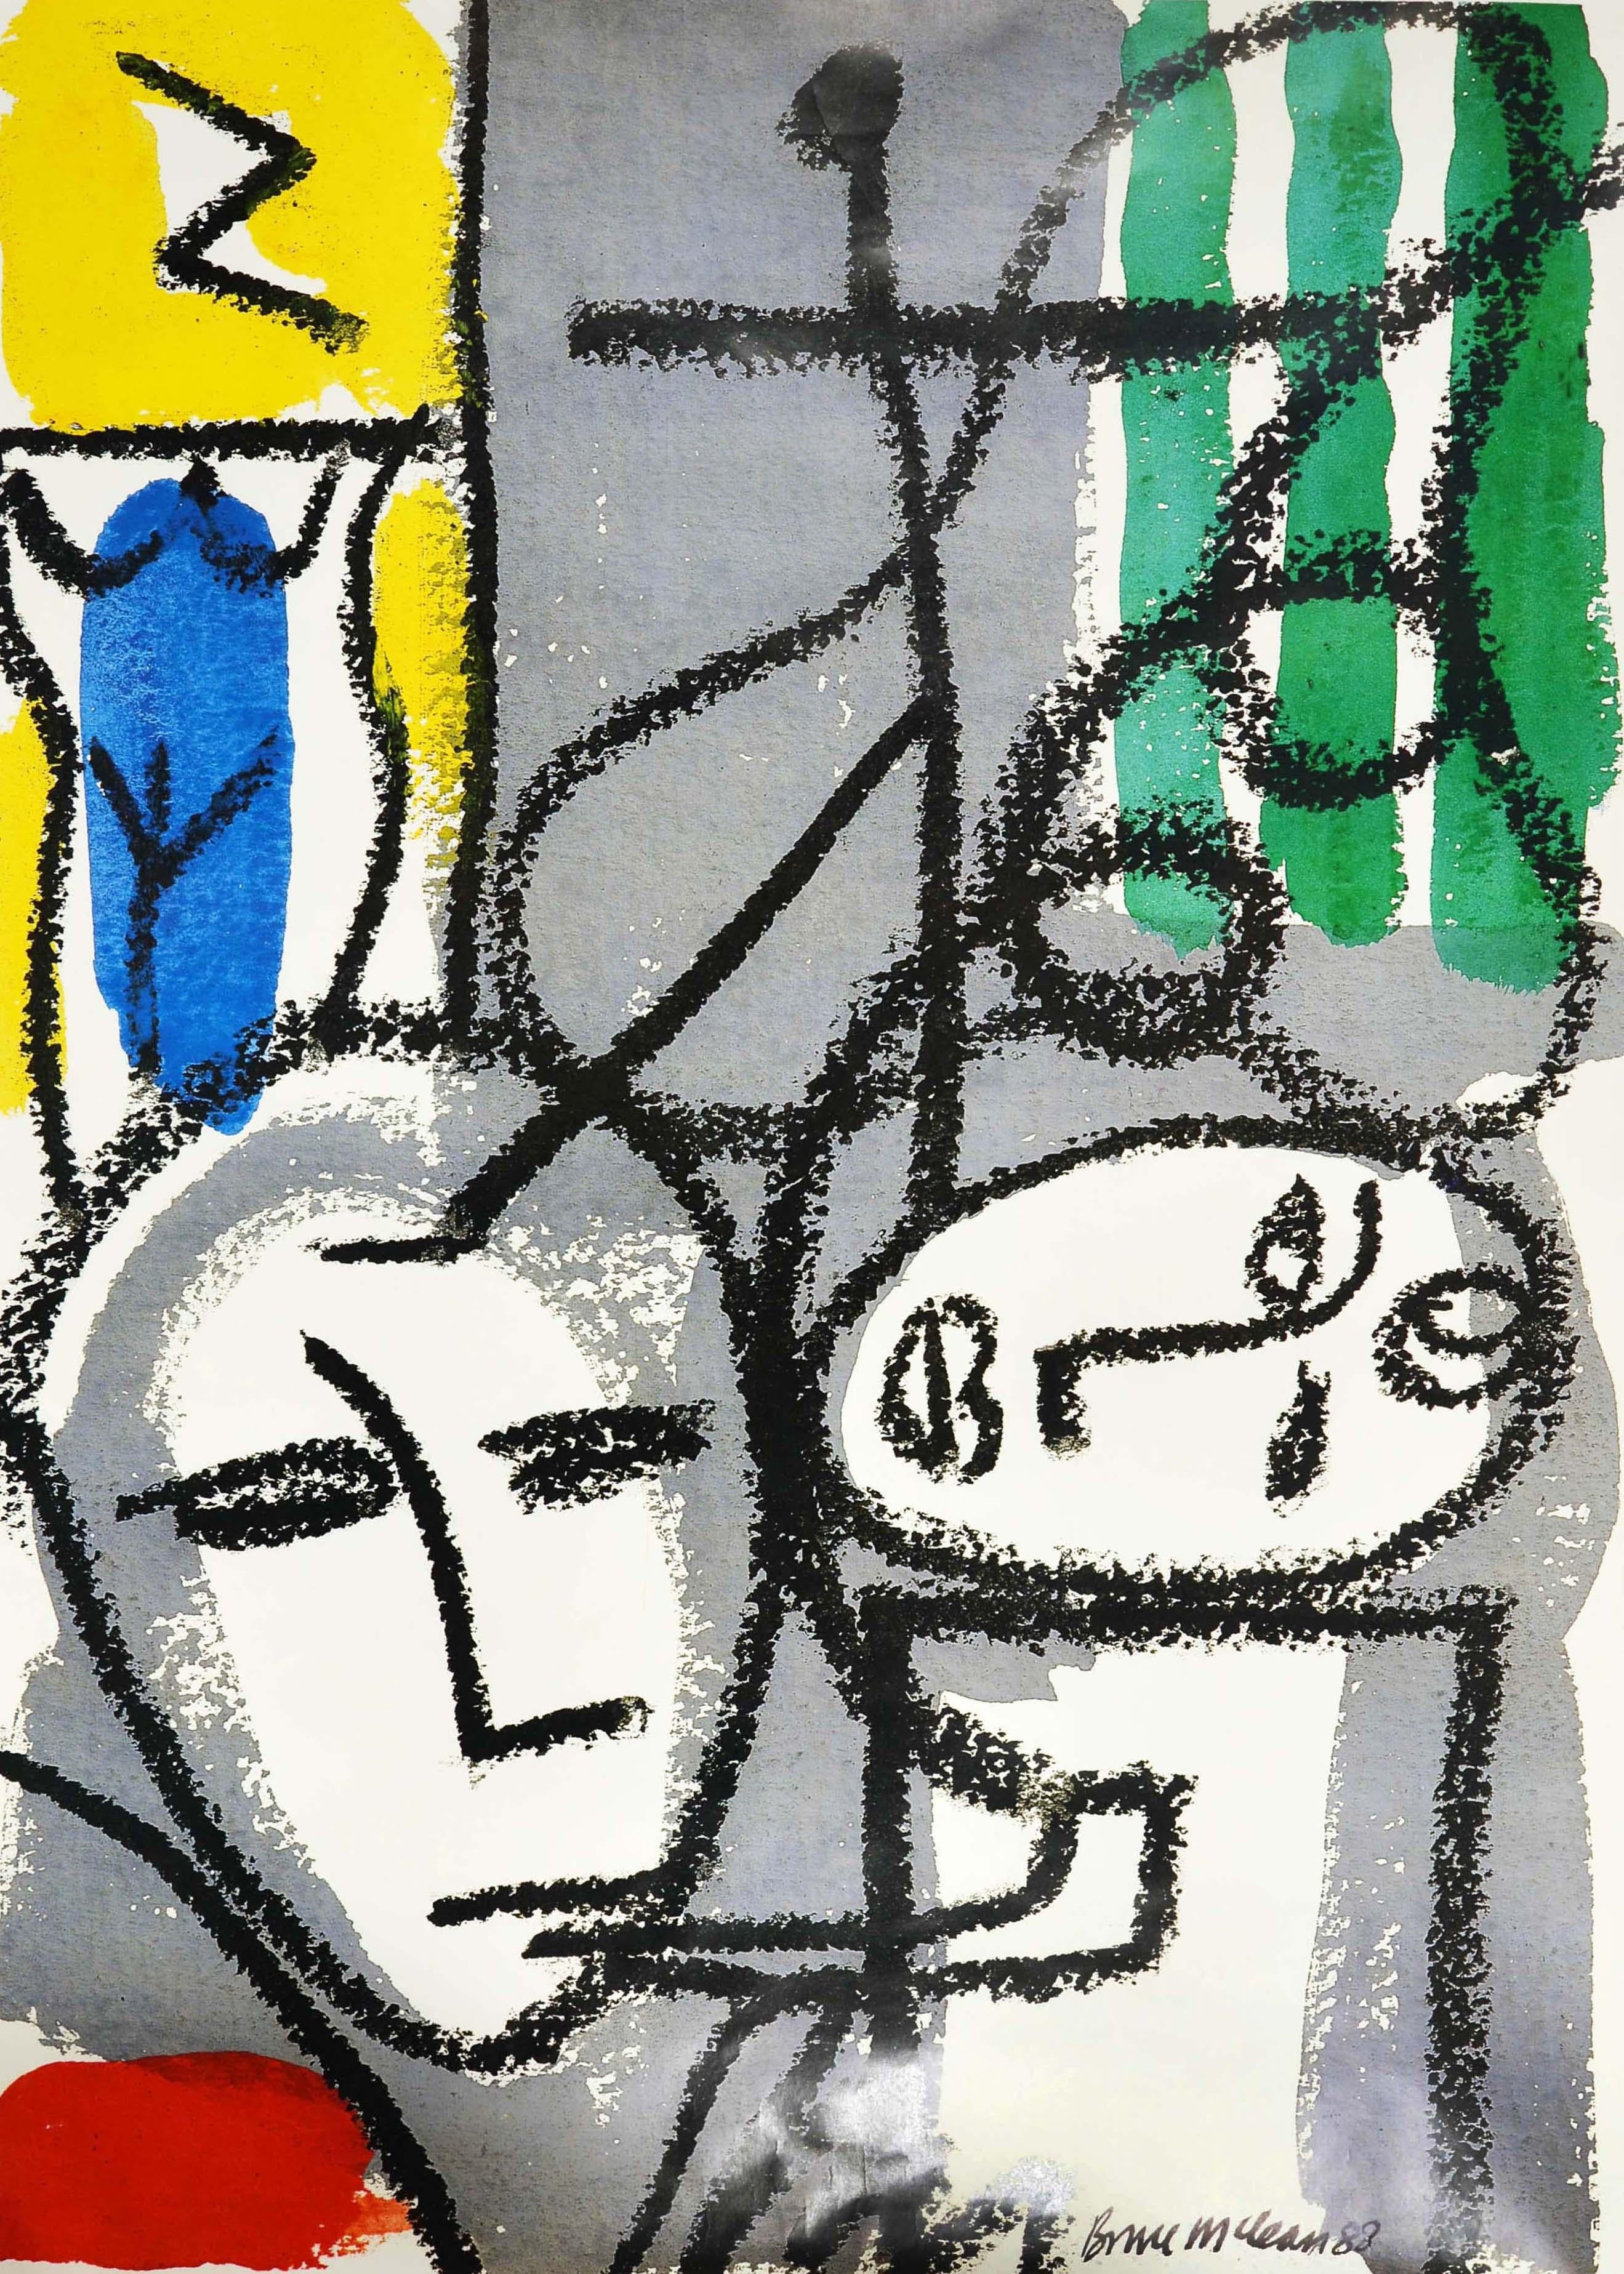 Affiche originale du métro londonien - Whitechapel Art Gallery à côté de la station Aldgate East - présentant un dessin abstrait du sculpteur et peintre écossais Bruce McLean (né en 1944) représentant des visages, l'un fumant la pipe et l'autre